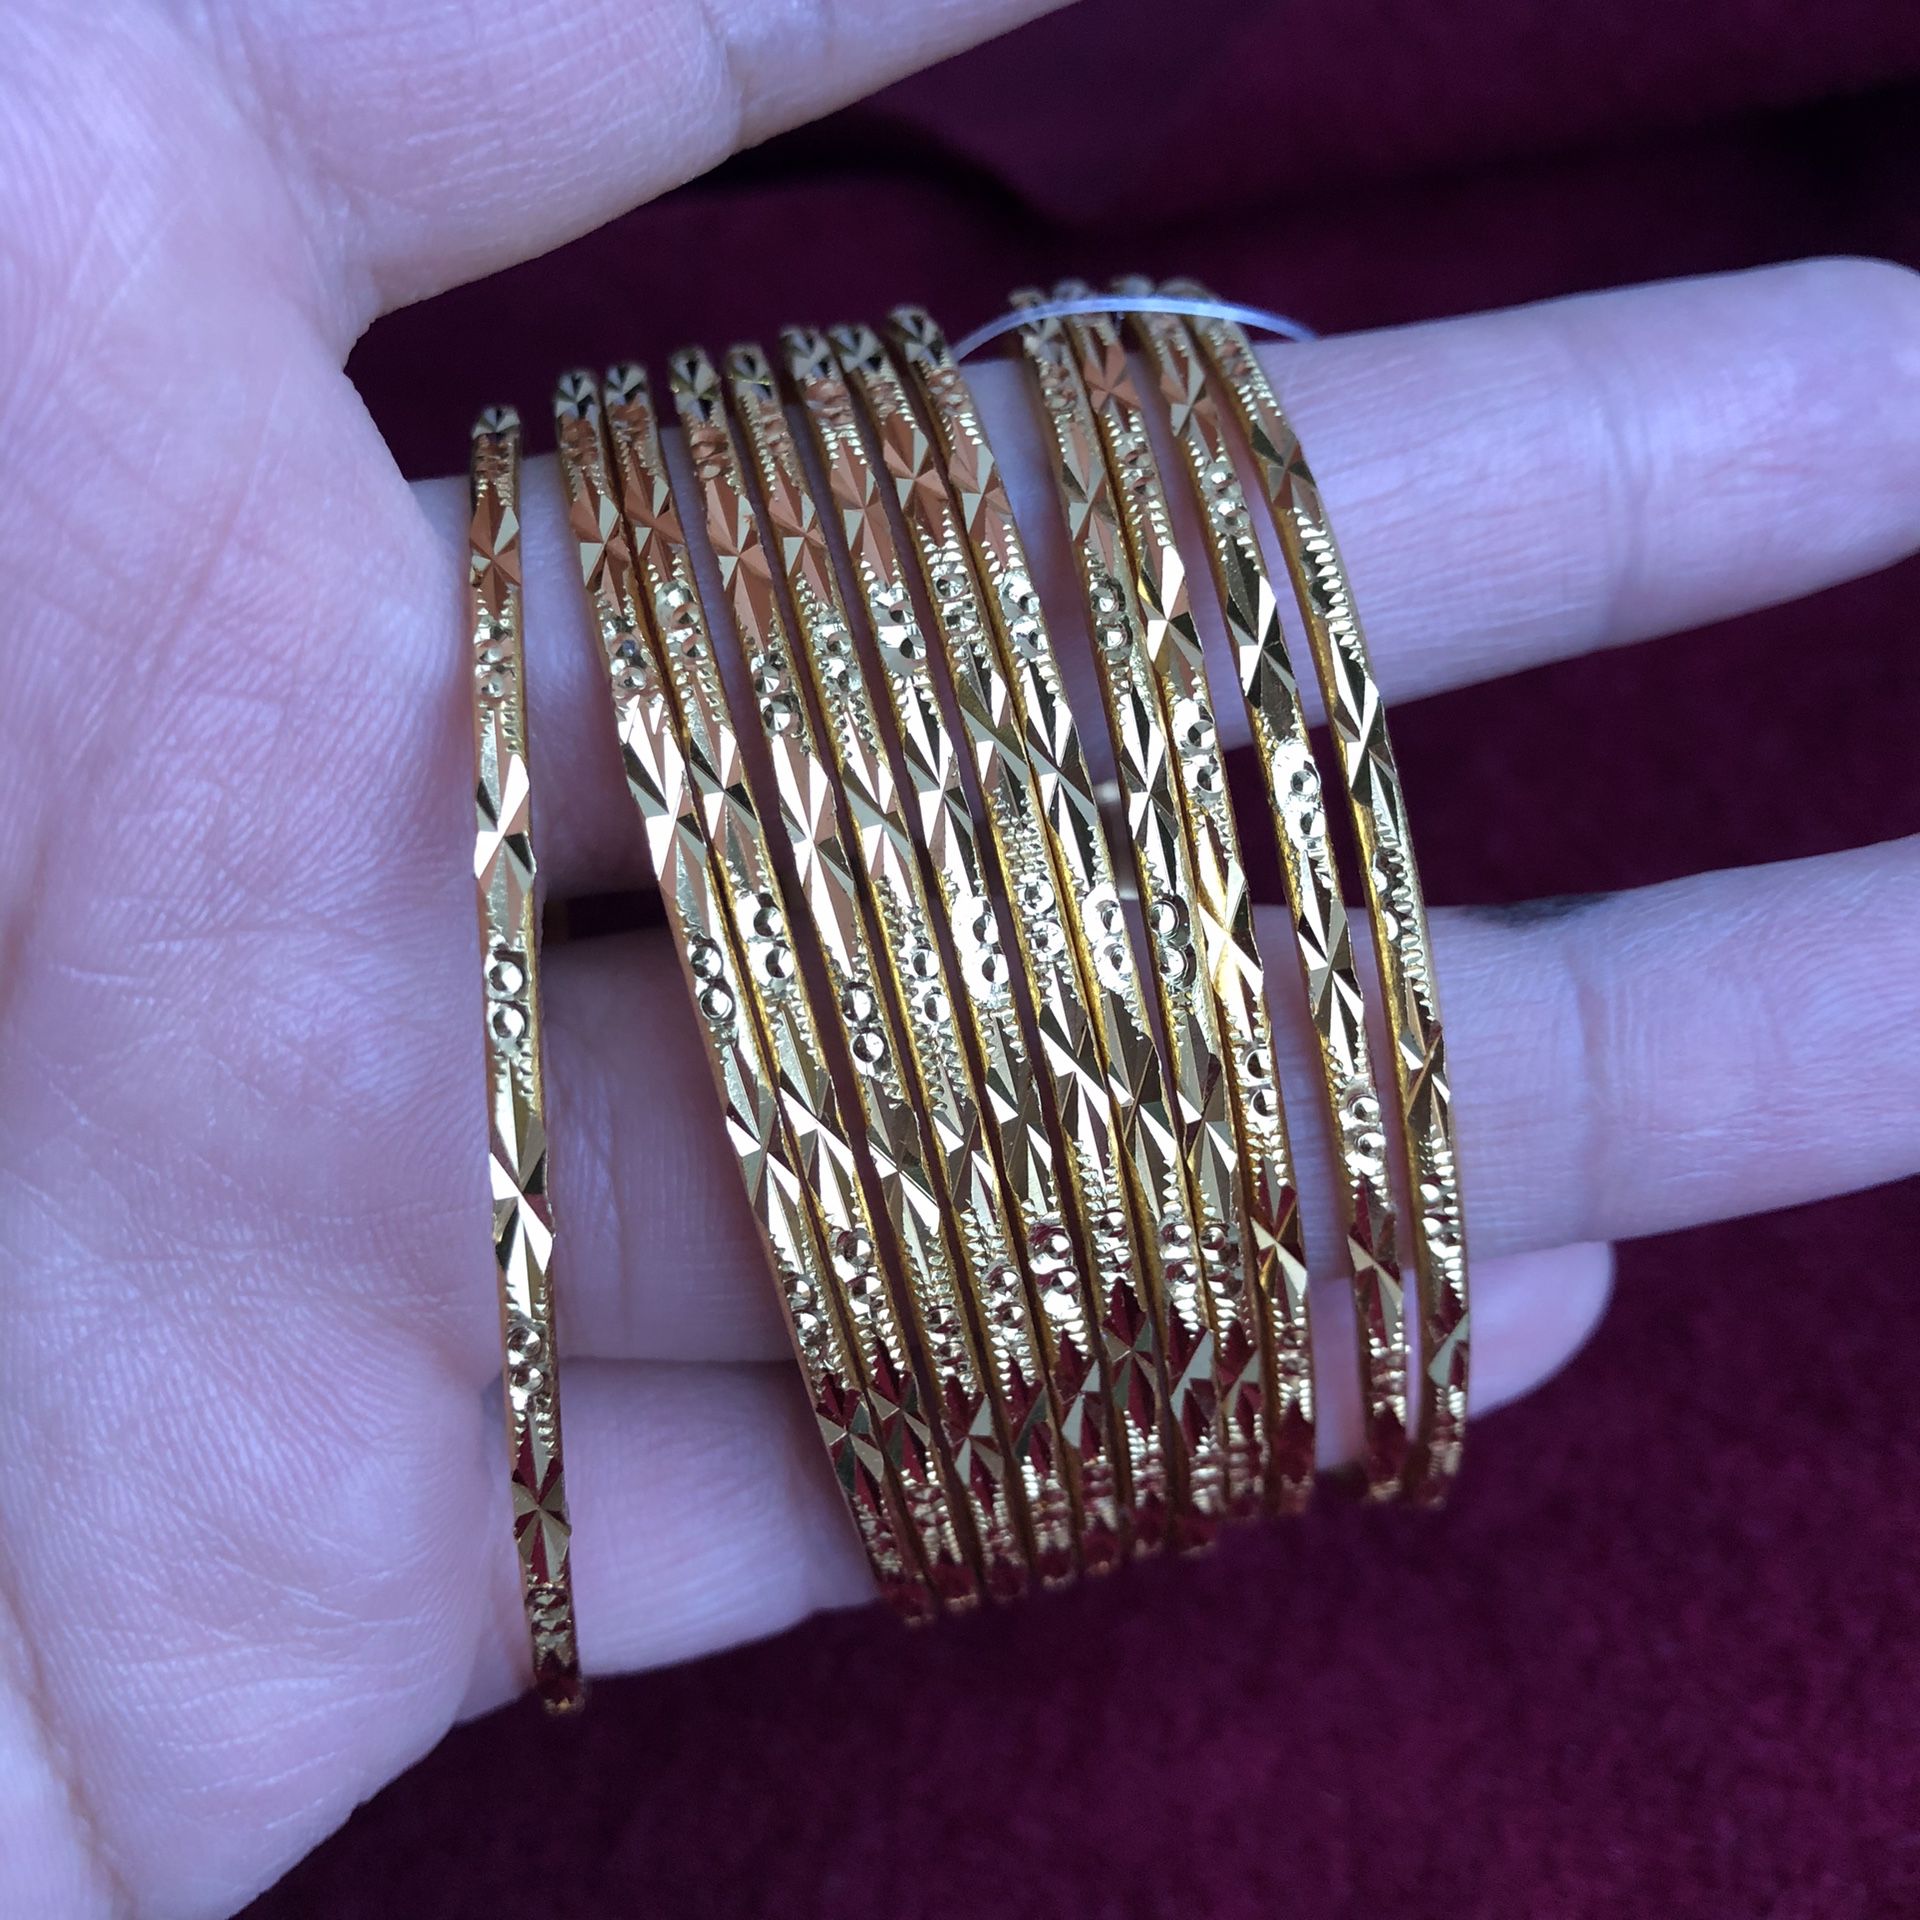 22k Gold Plated Bangles Size 2-6 2-8 Indian Pakistani Jewelry